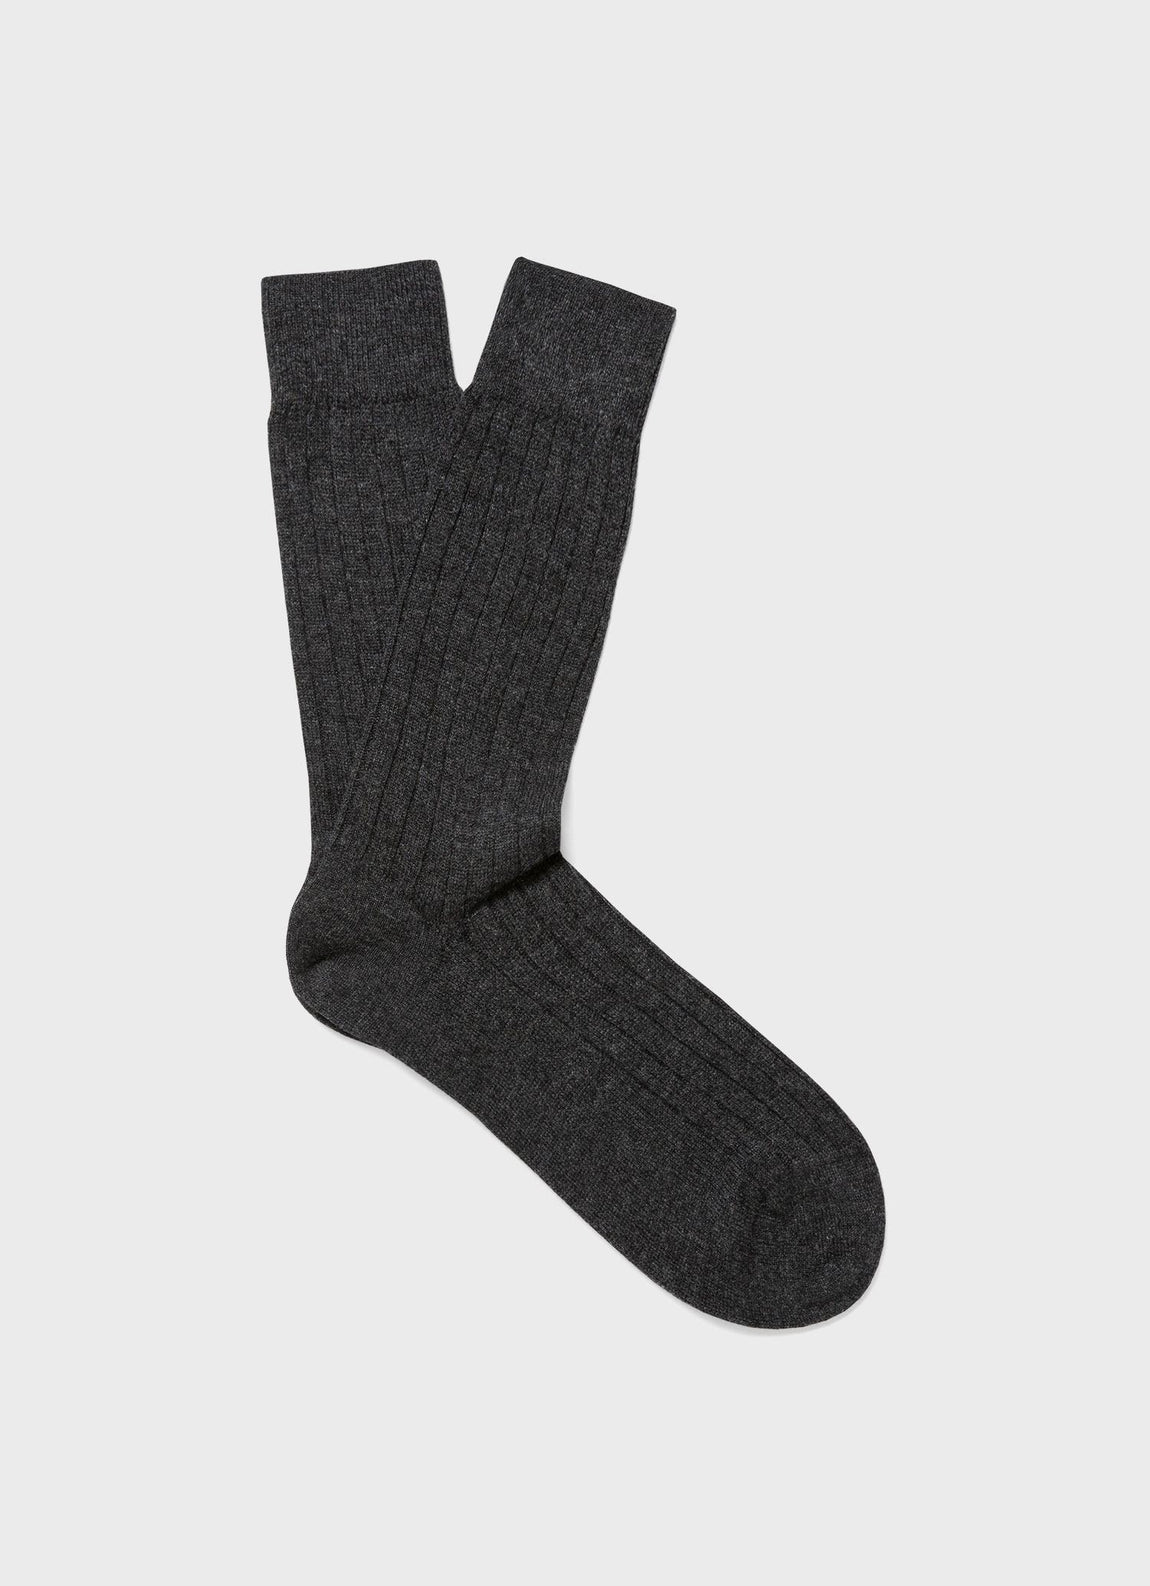 Men's Cashmere Ribbed Socks in Charcoal Melange